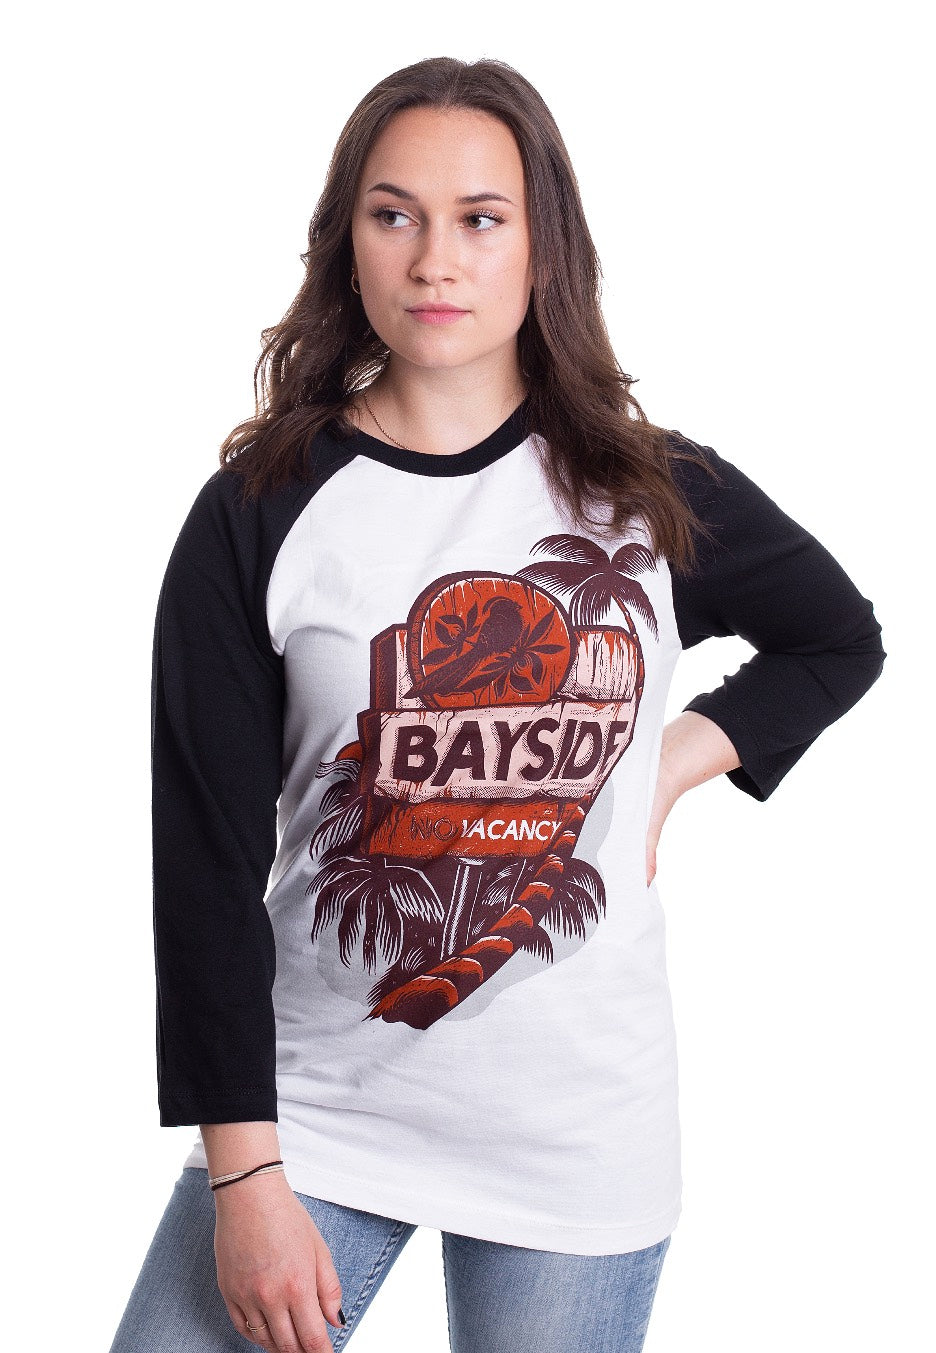 Bayside - No Vacancy - T-Shirt | Women-Image